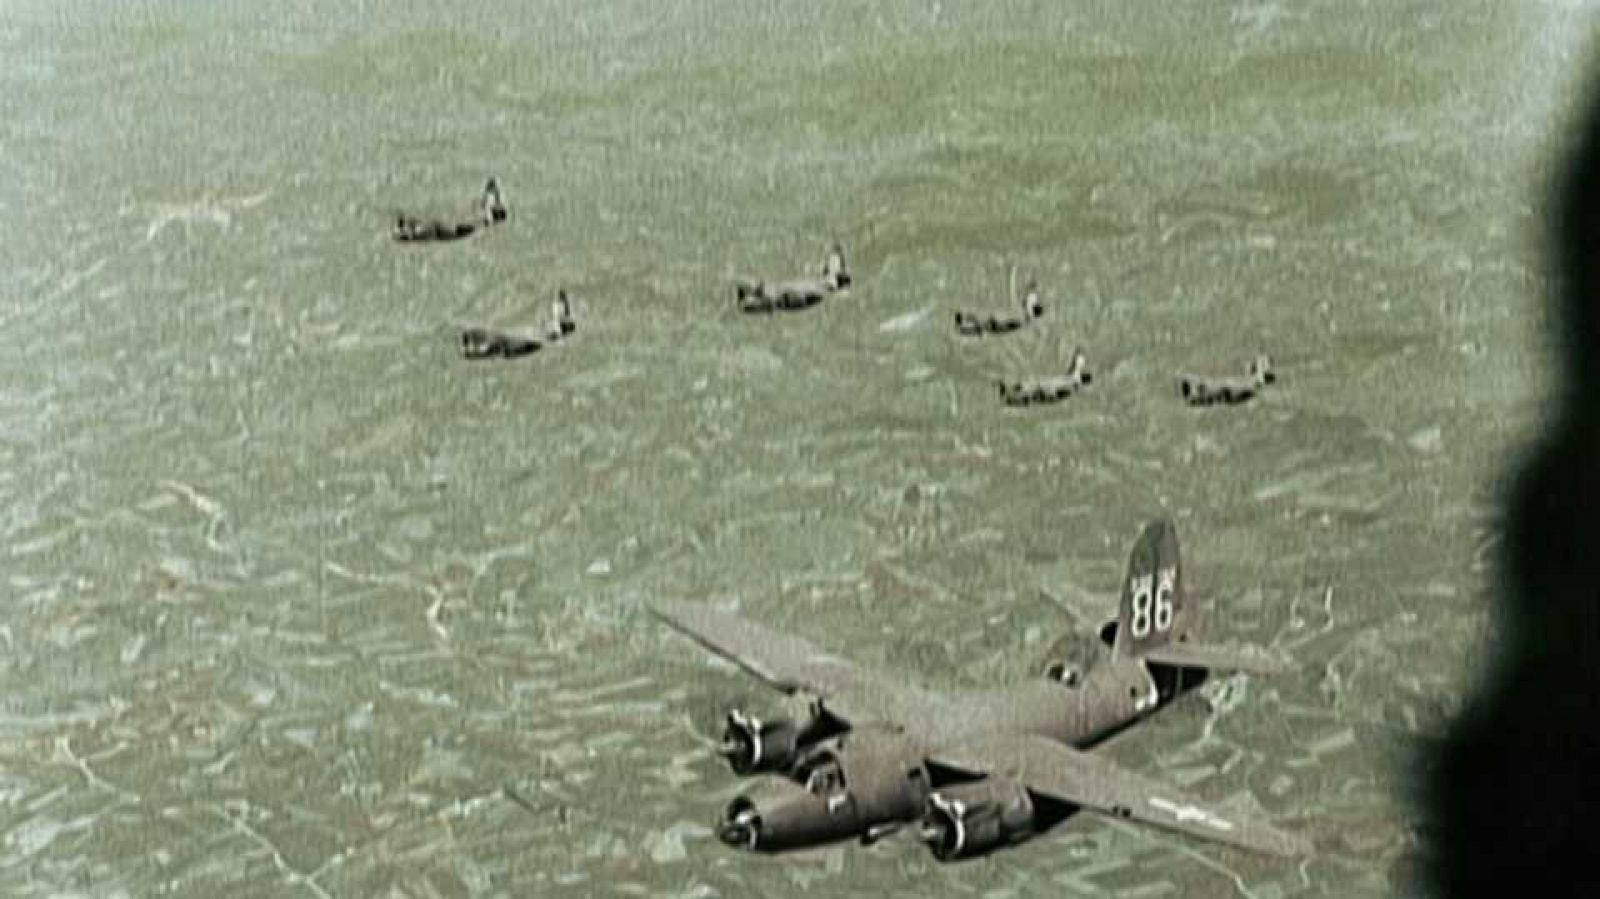 Apocalipsis. La II Guerra Mundial - Episodio 6: El infierno - Documental en RTVE